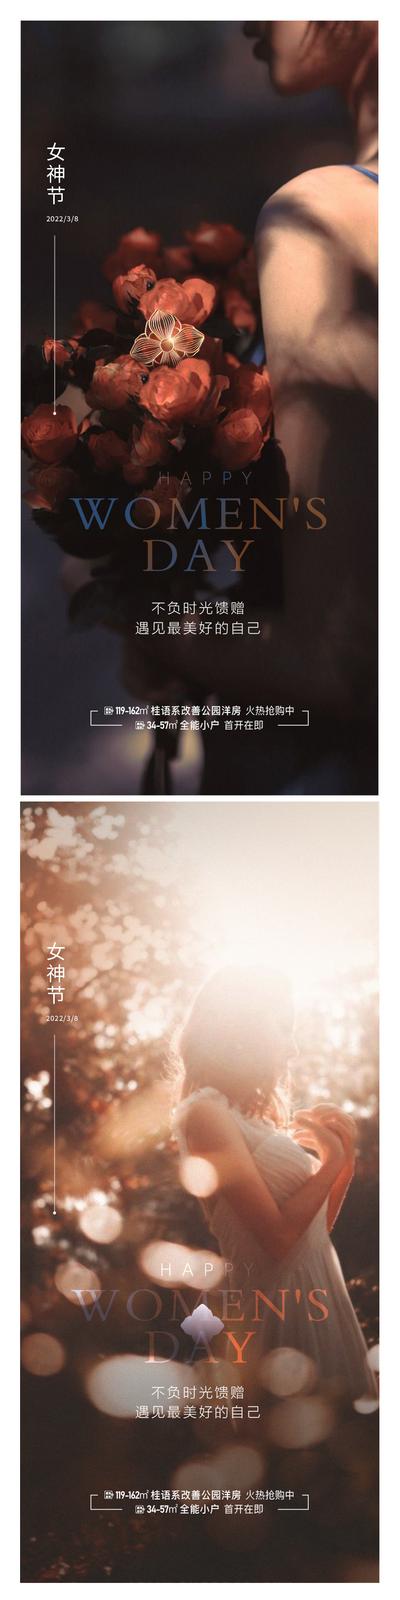 南门网 广告 海报 节日 女神节 38 妇女节 花朵 系列 烟花